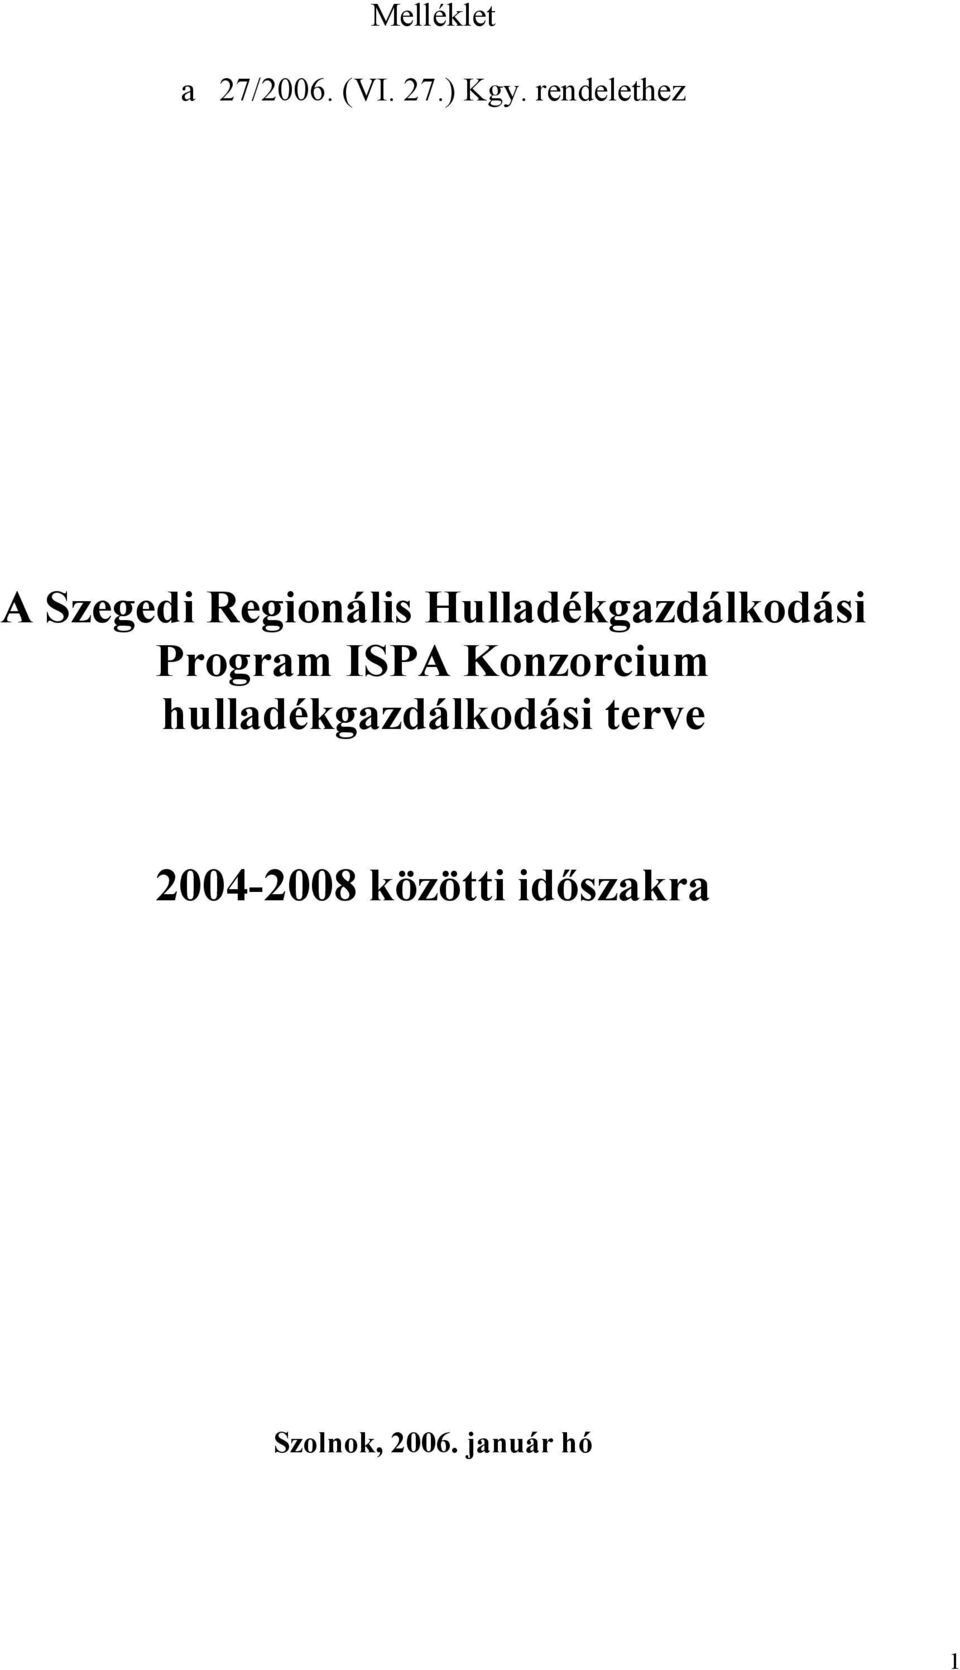 Hulladékgazdálkodási Program ISPA Konzorcium